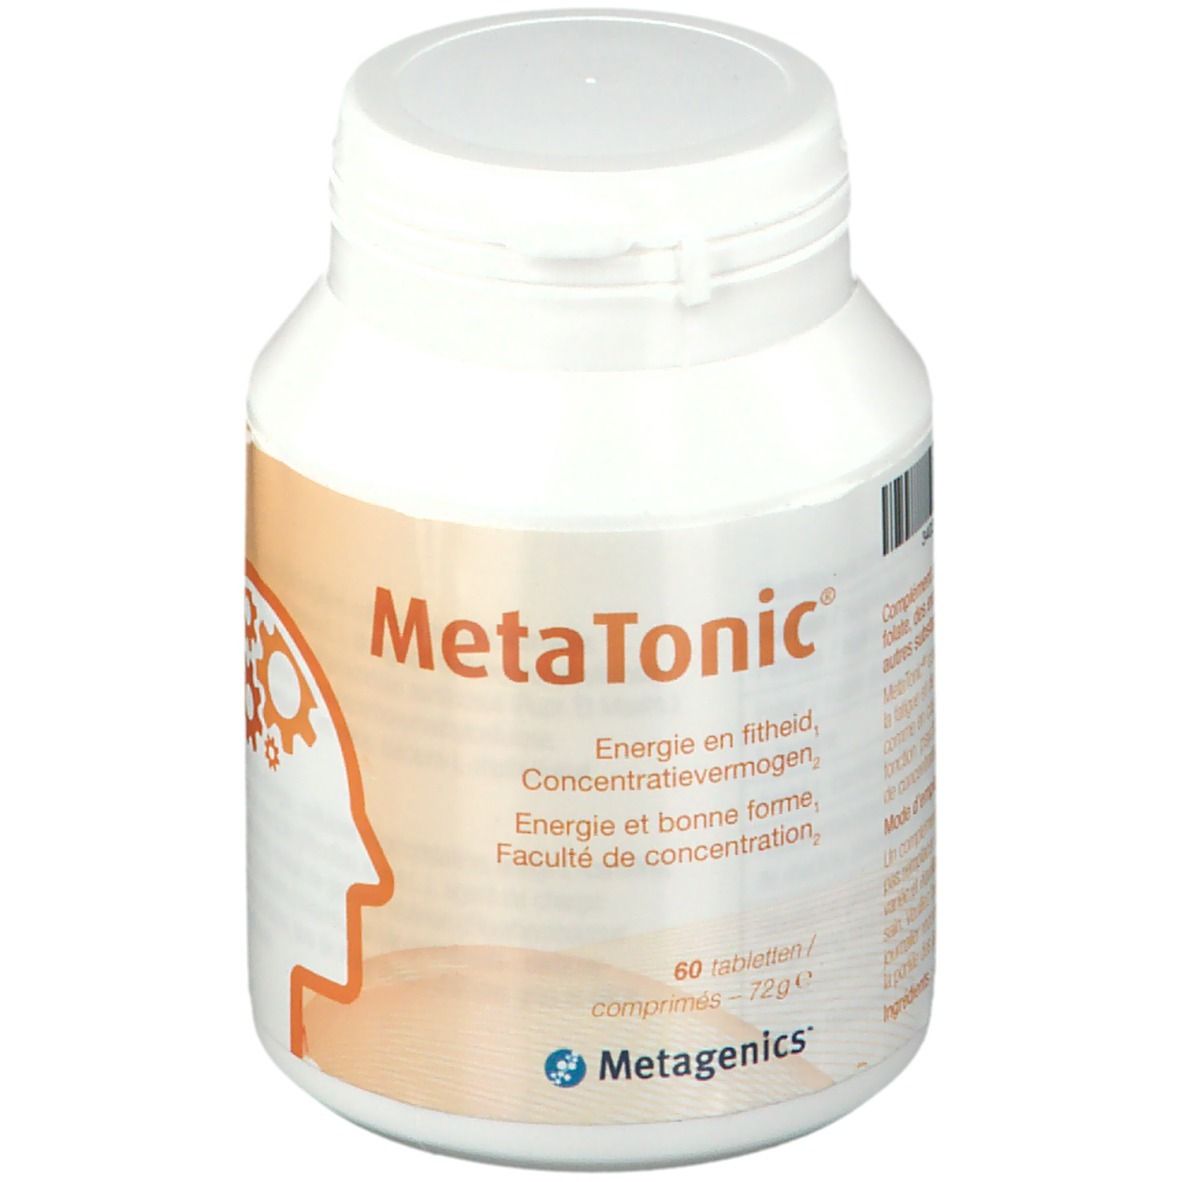 MetaTonic